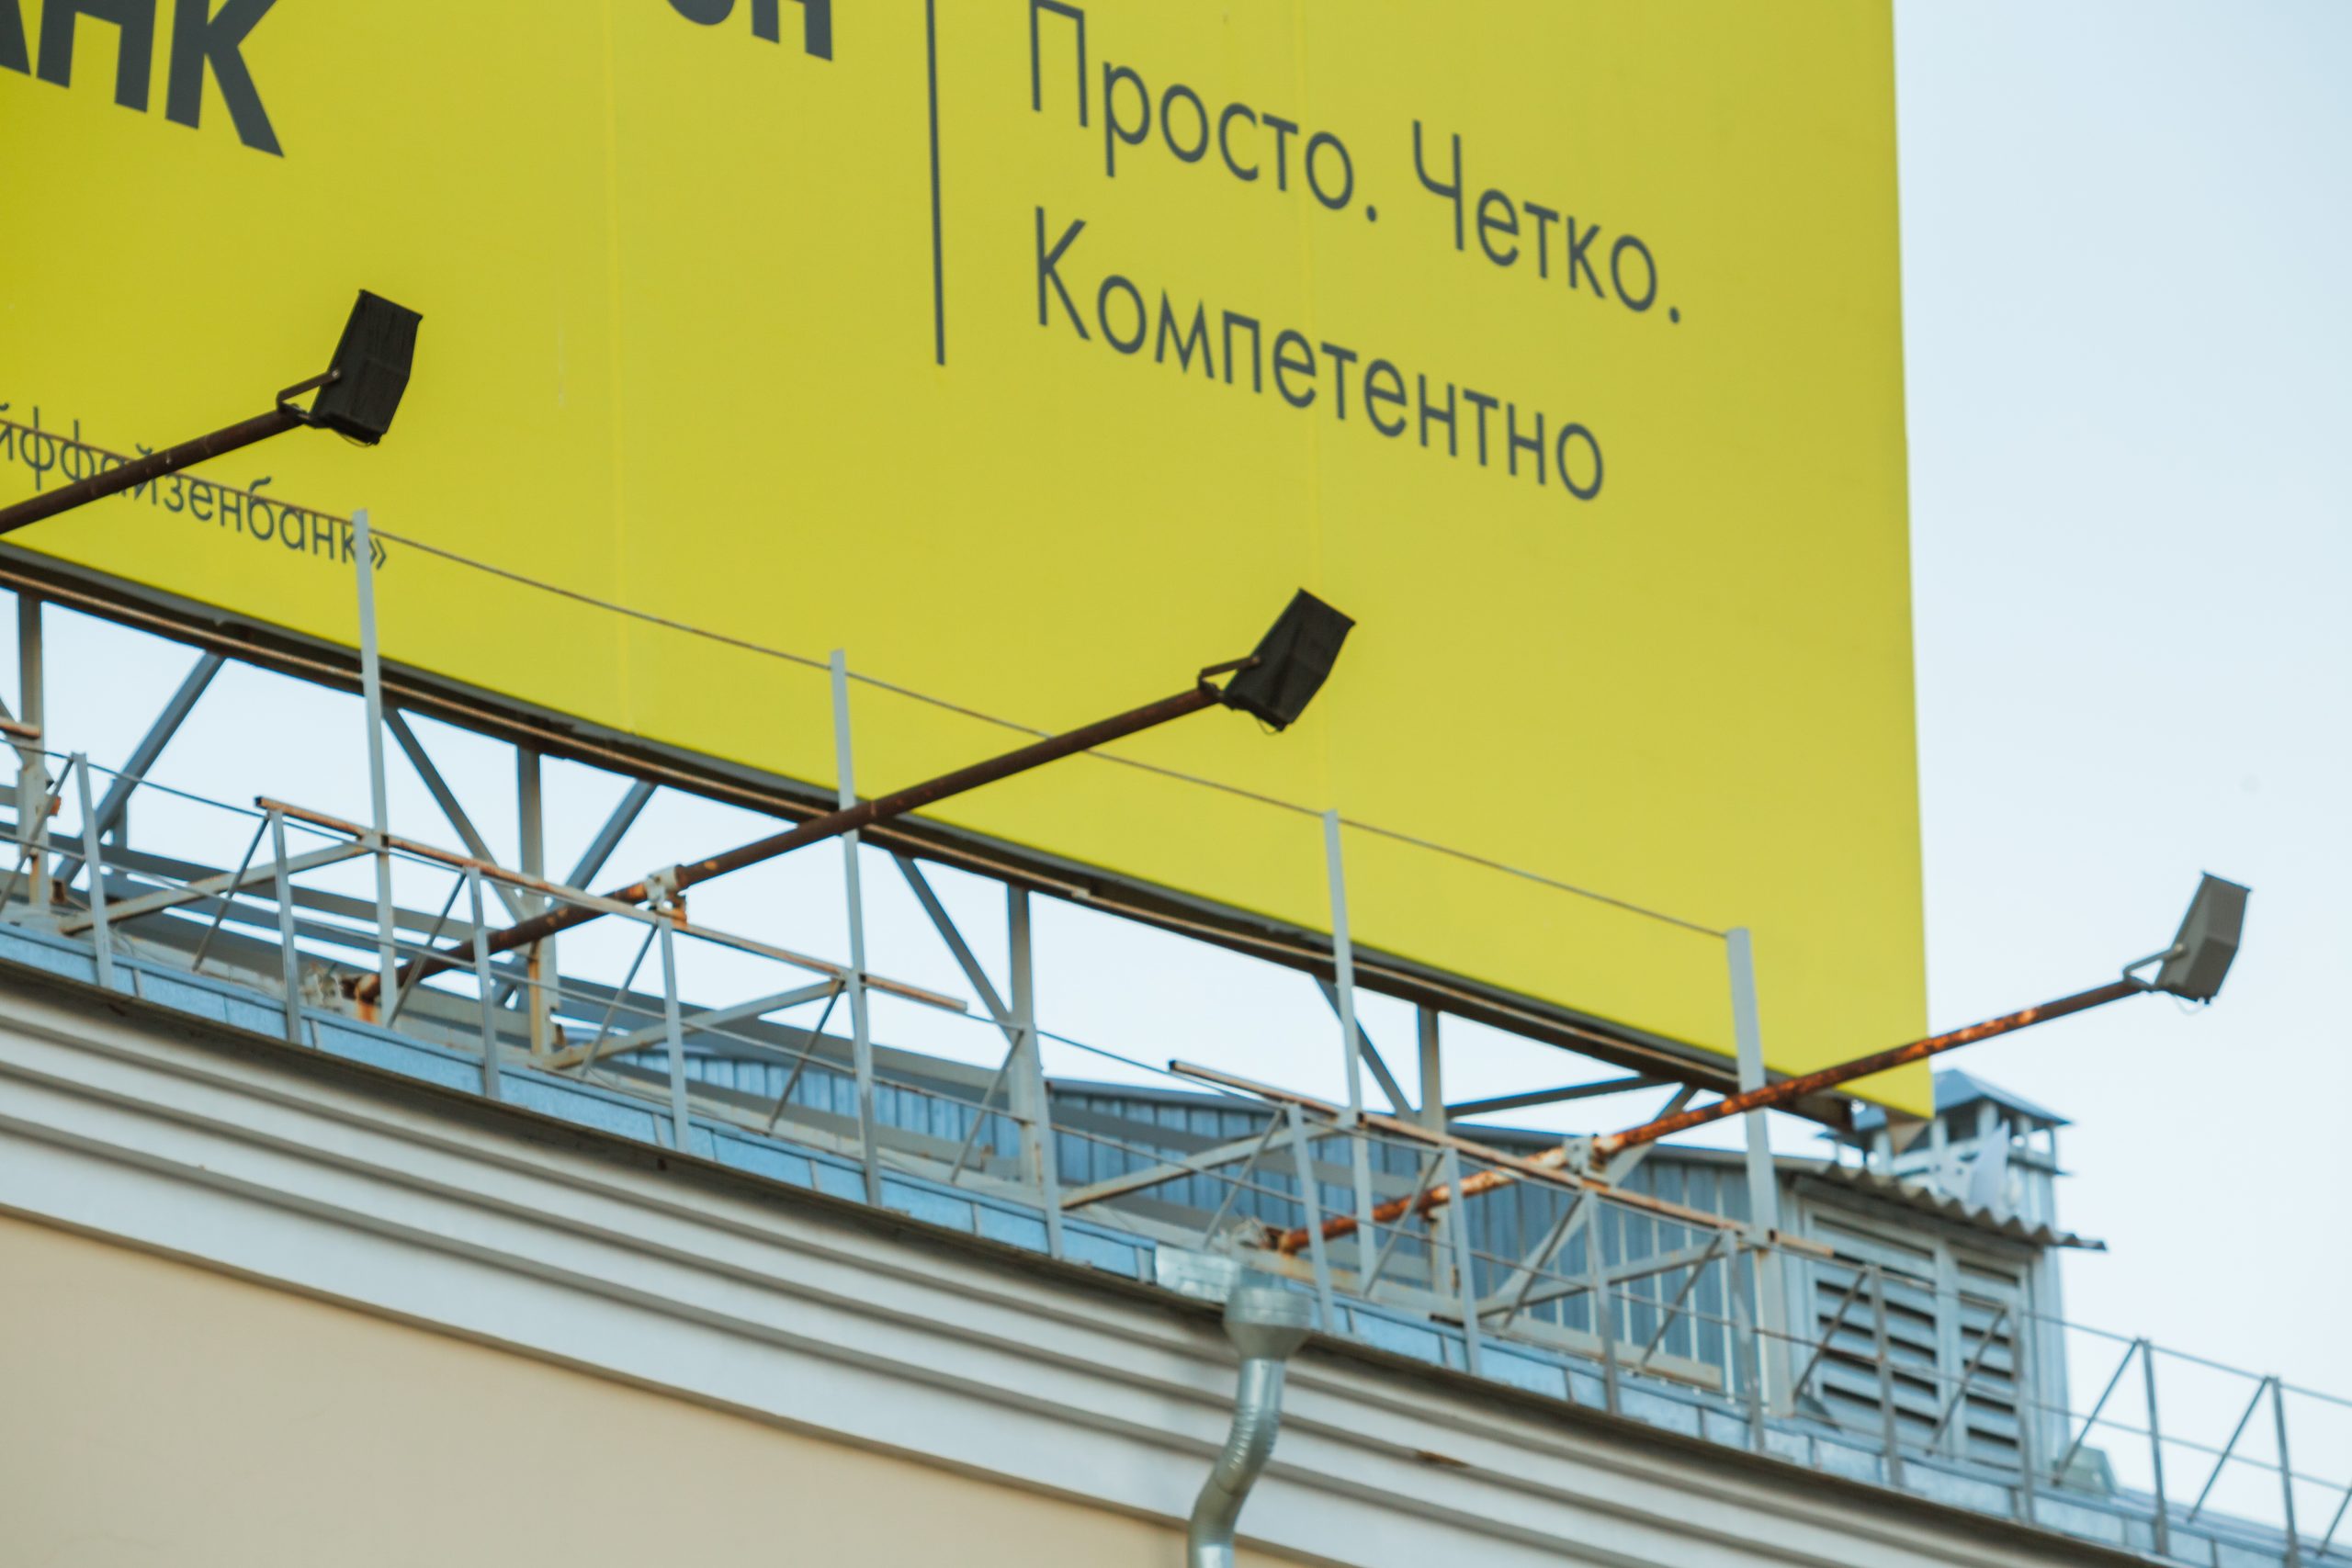 Наружная реклама на щитах и брандмауэрах в Куйбышеве